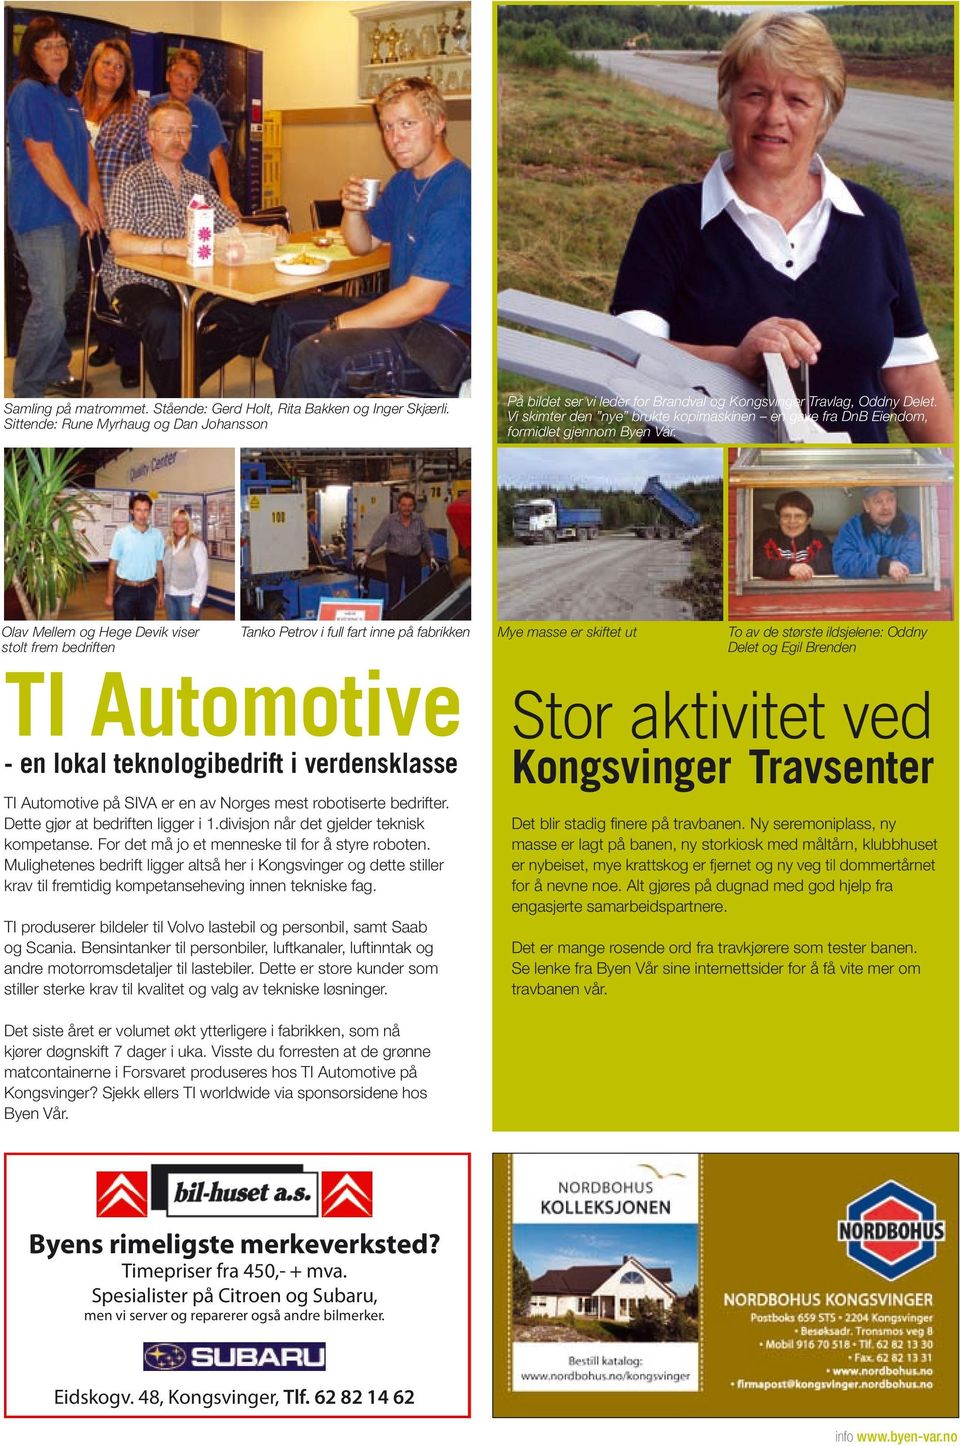 Olav Mellem og Hege Devik viser stolt frem bedriften Tanko Petrov i full fart inne på fabrikken TI Automotive - en lokal teknologibedrift i verdensklasse Mye masse er skiftet ut To av de største